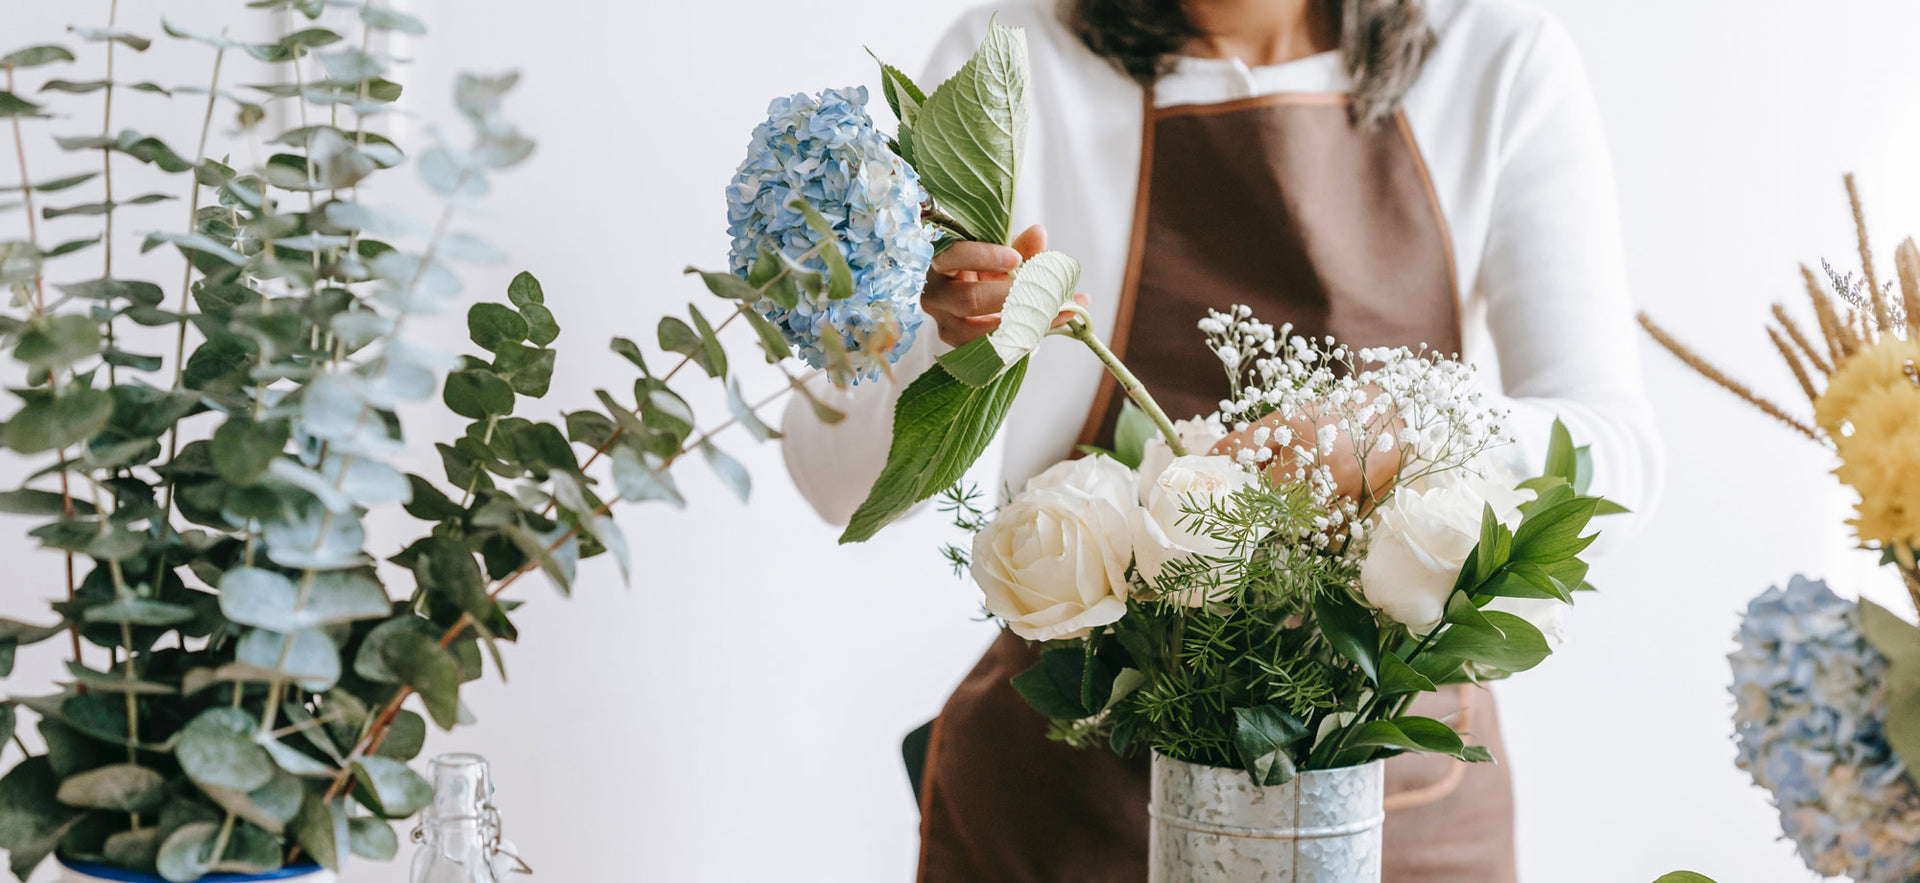 Florist tips for flower care